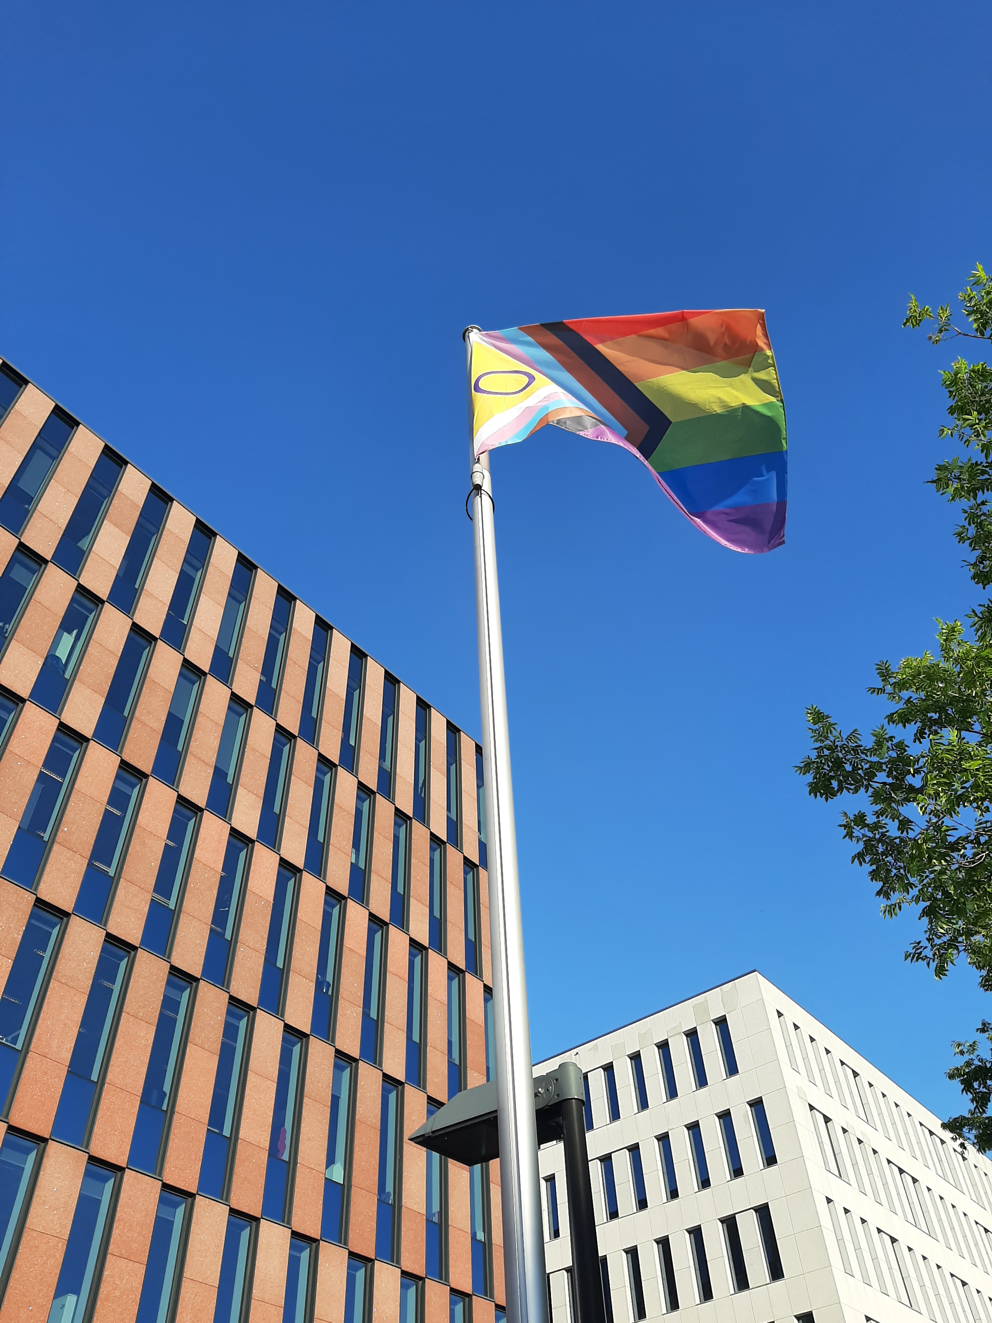 Stad Leuven stelt haar ambities voor een vernieuwd regenboogbeleid voor